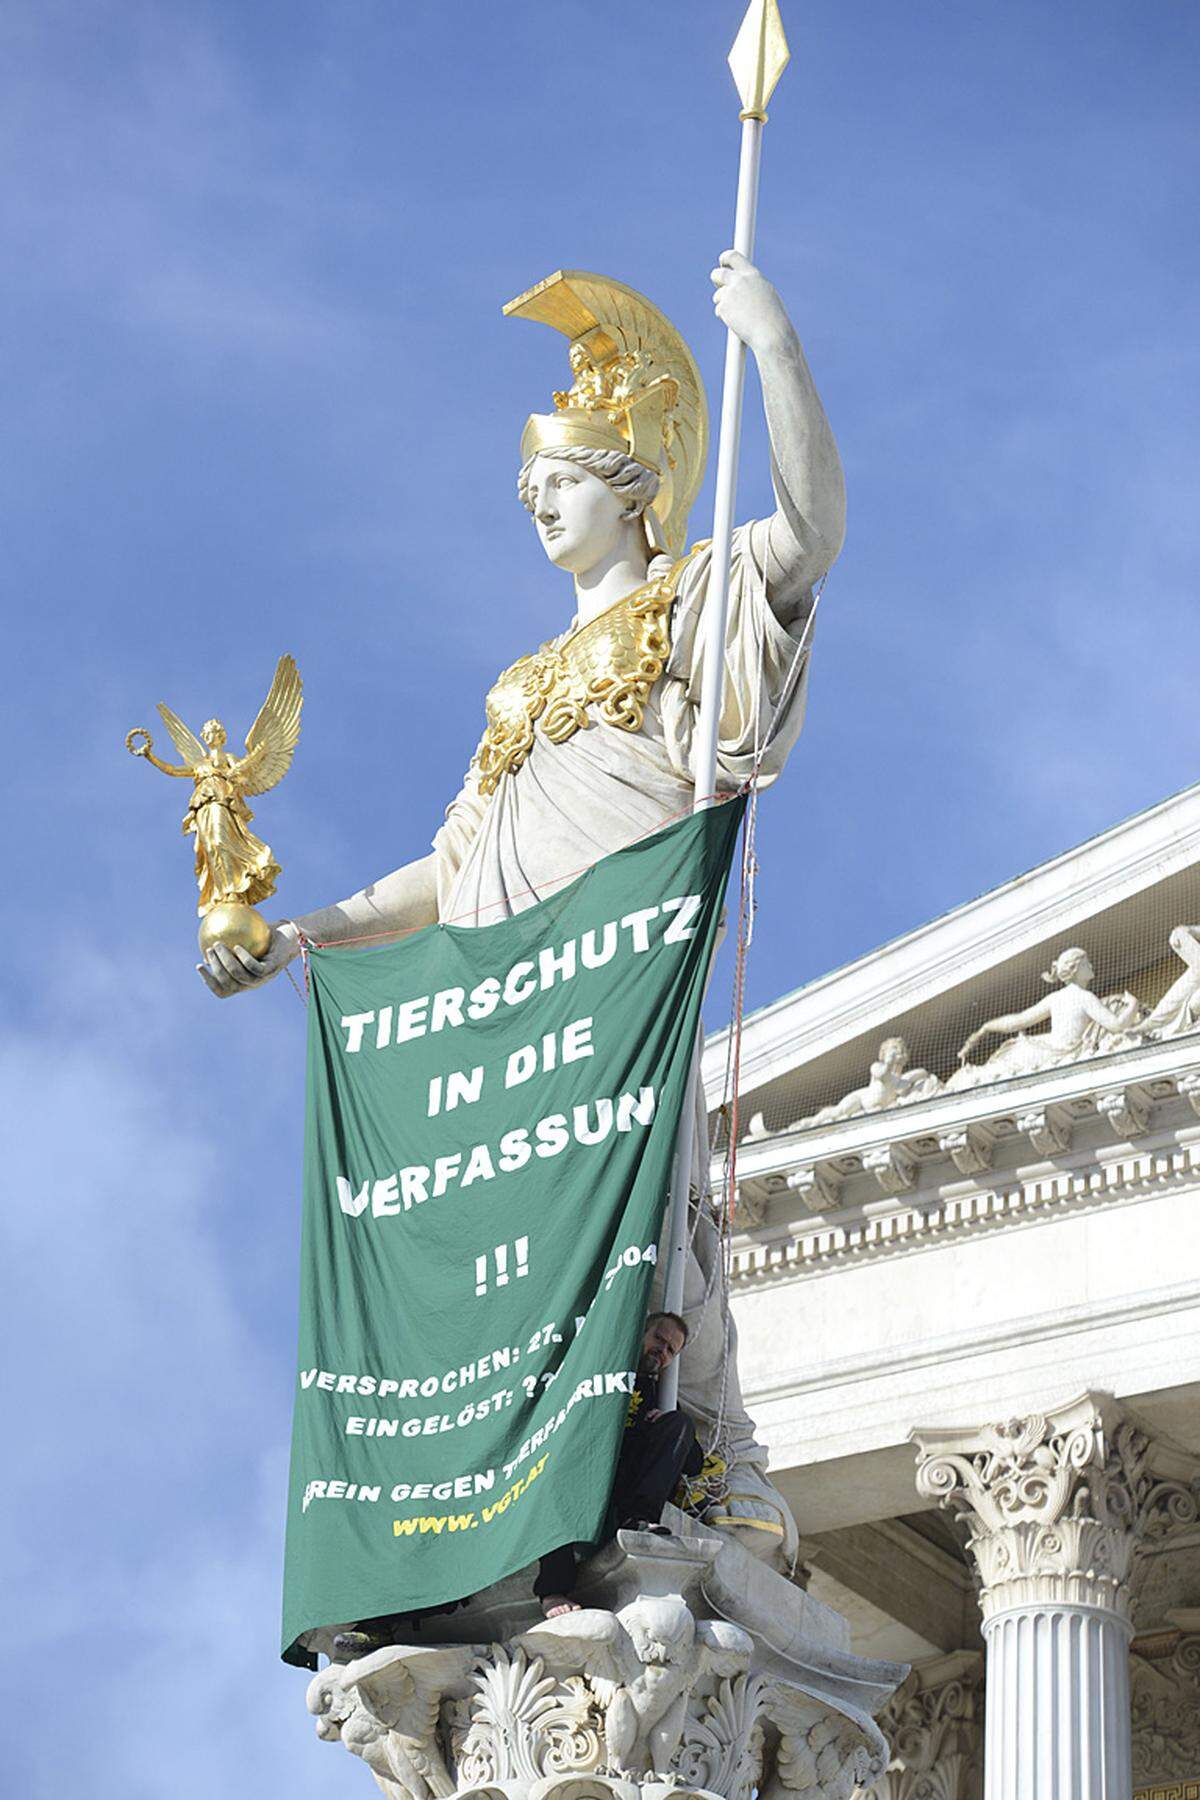 26. September.  Kletteraktion auf der Pallas Athene-Statue vor dem Parlament. "Tierschutz in die Verfassung" lautet die Forderung, die der Verein gegen Tierfabriken (VGT) mit dieser Protestaktion gestellt hat.